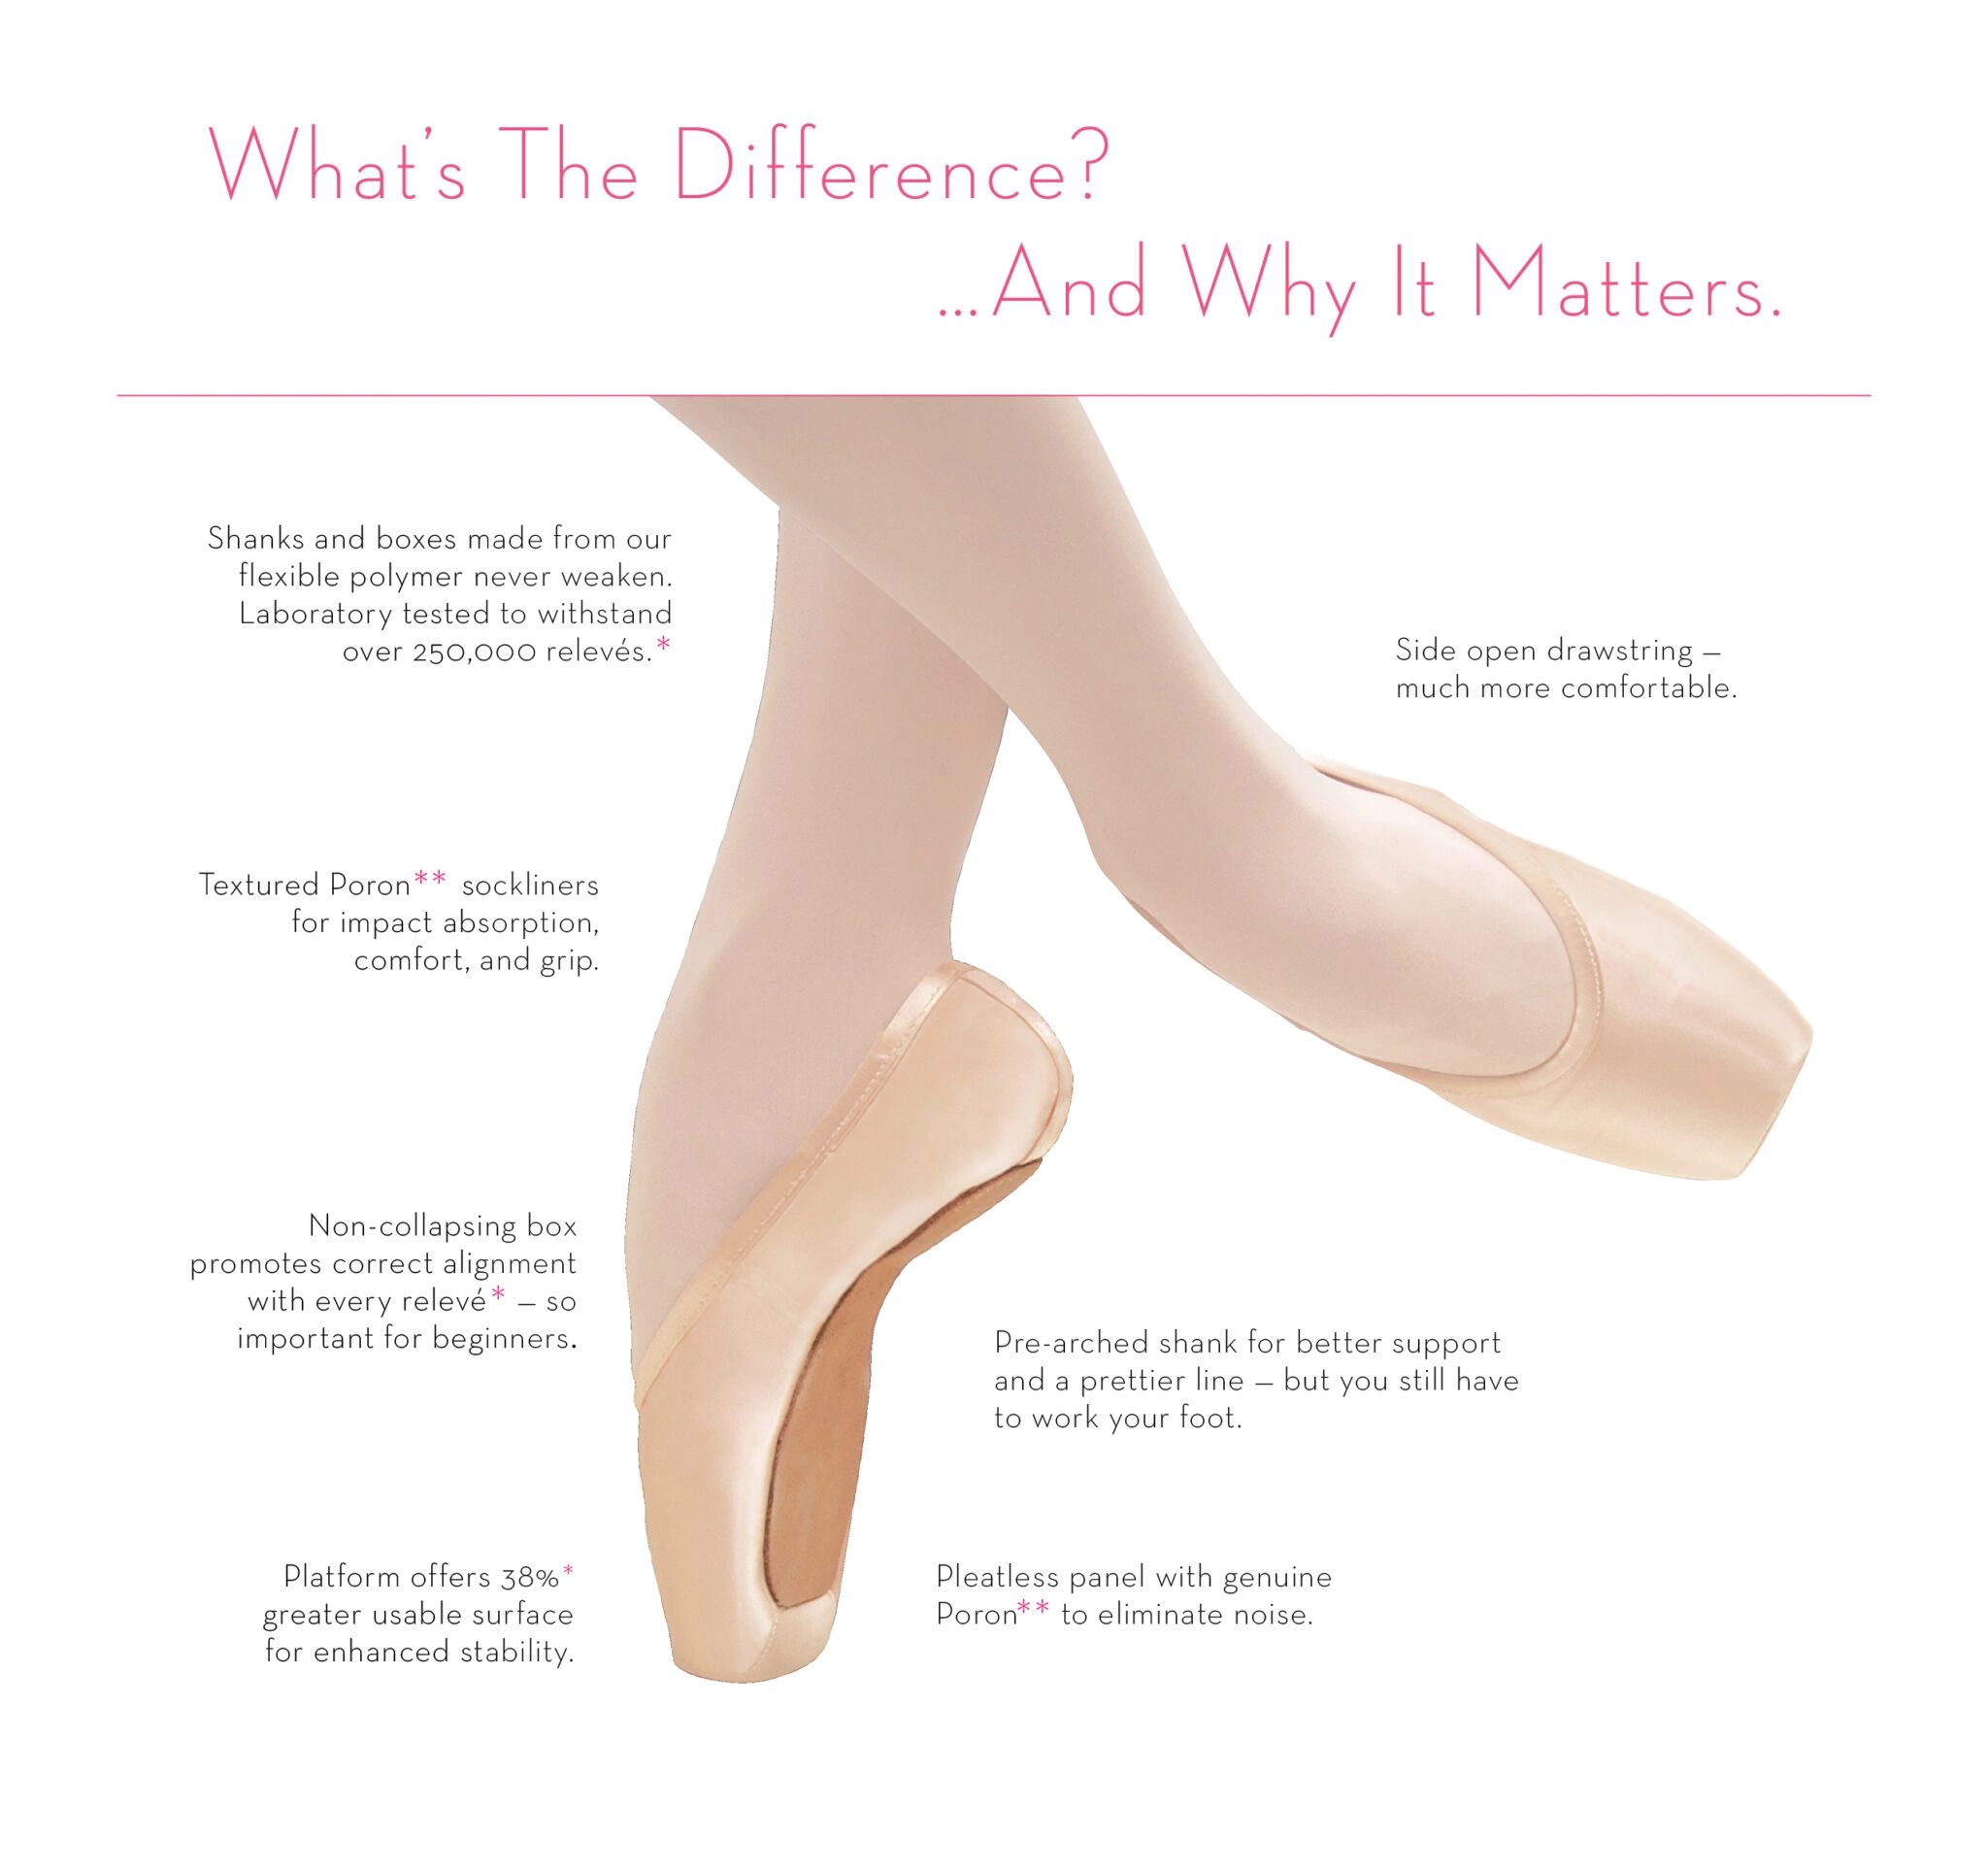 Zapatillas de ballet con goma delantera para un mejor agarre